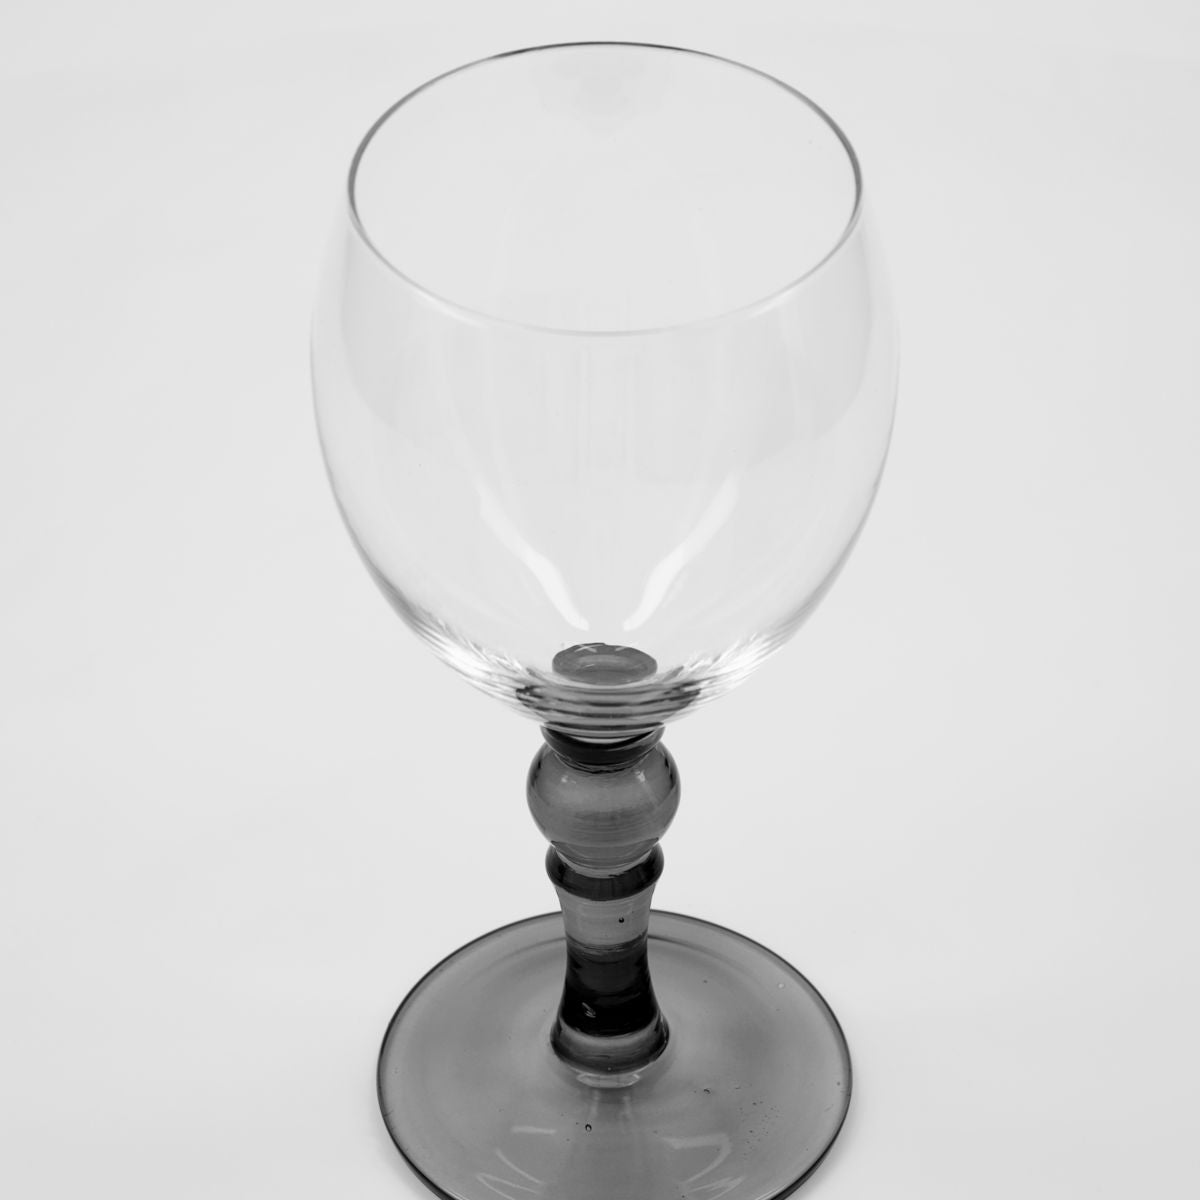 Meyer Ölglas